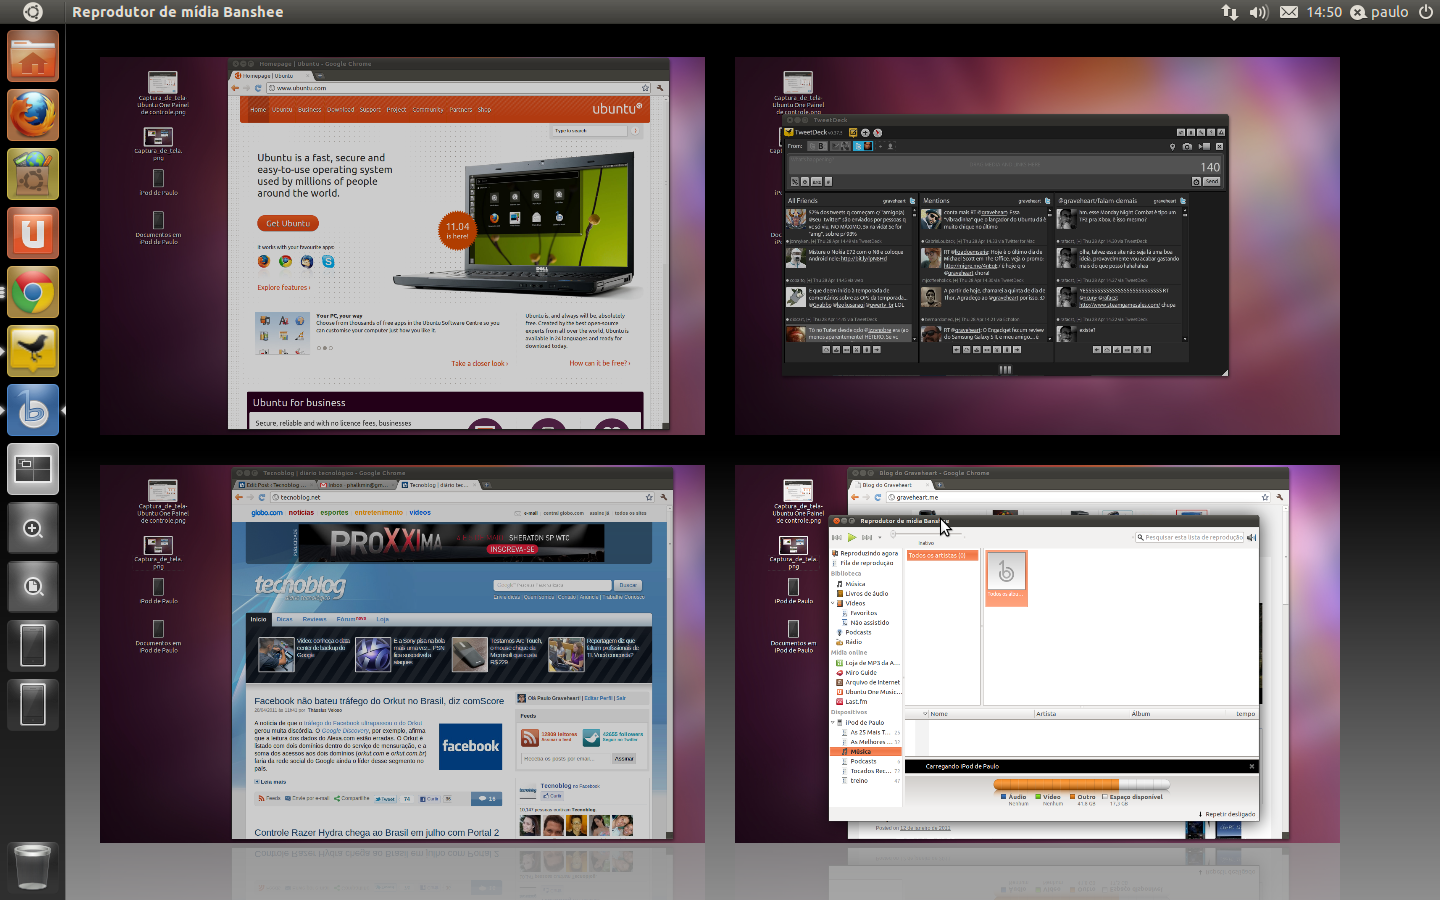 Tudo sobre o Ubuntu 11.04